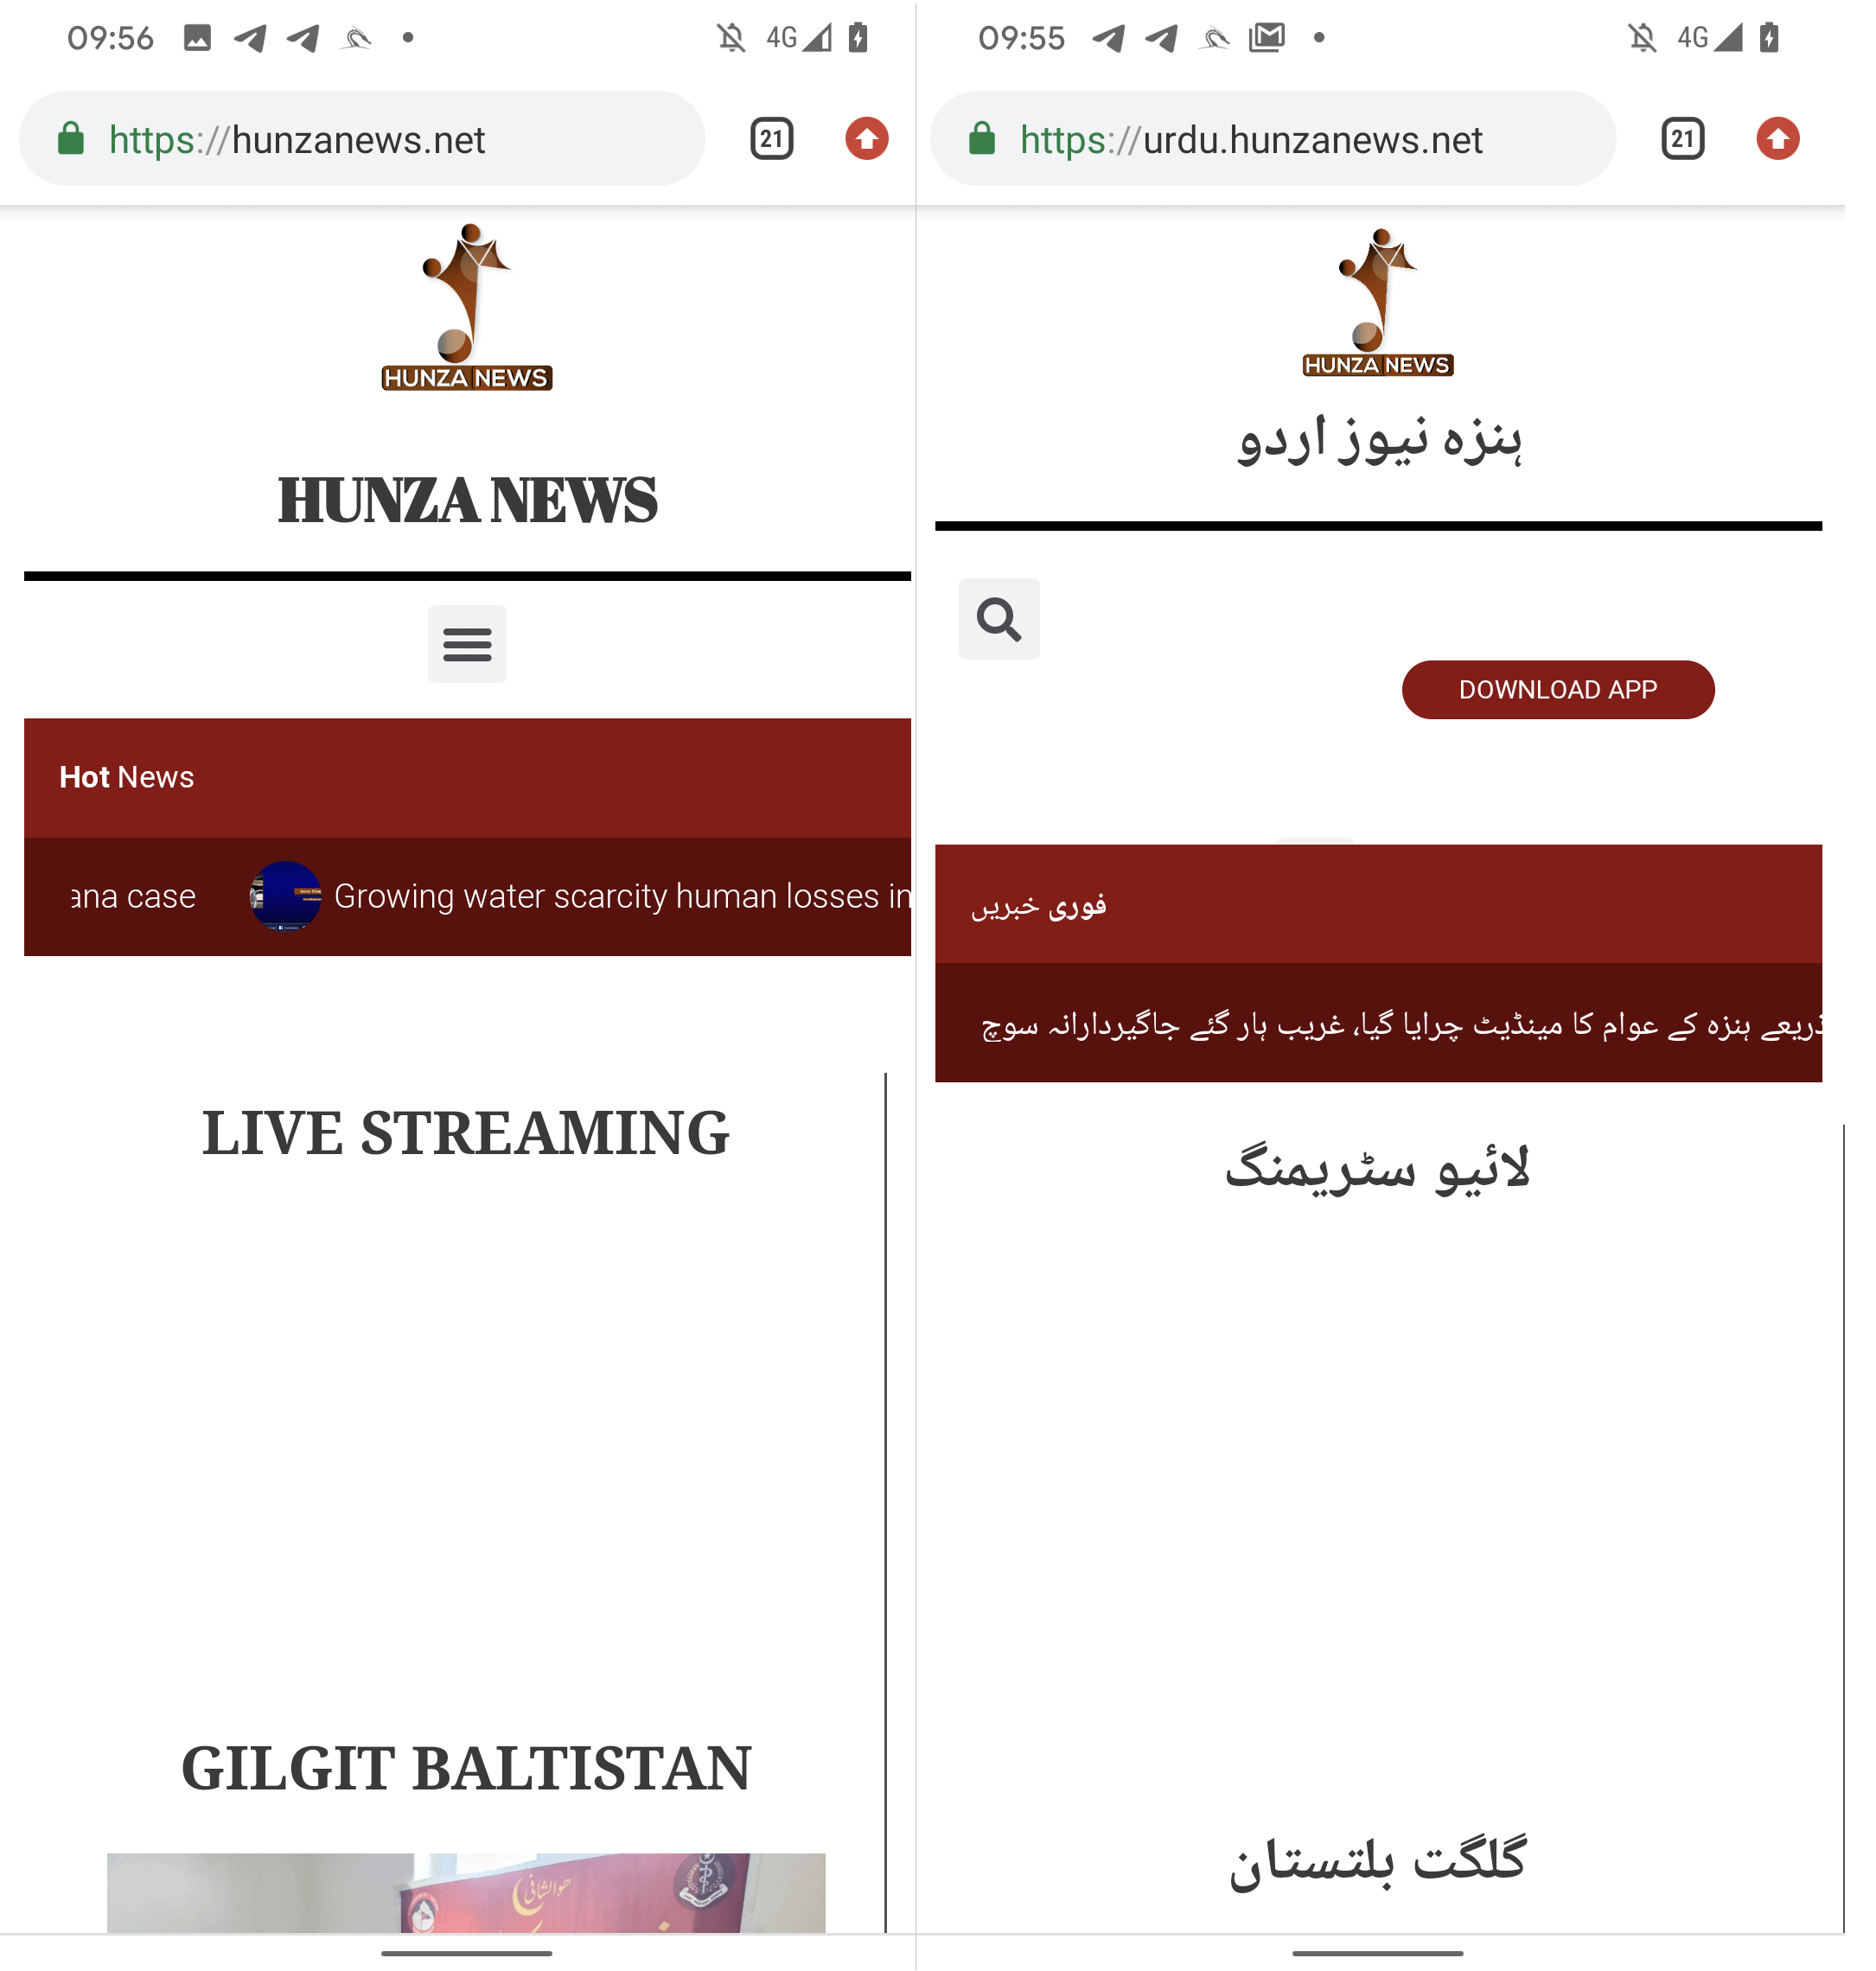 Figura 6 Versione inglese (a sinistra) e urdu (a destra) Hunza News